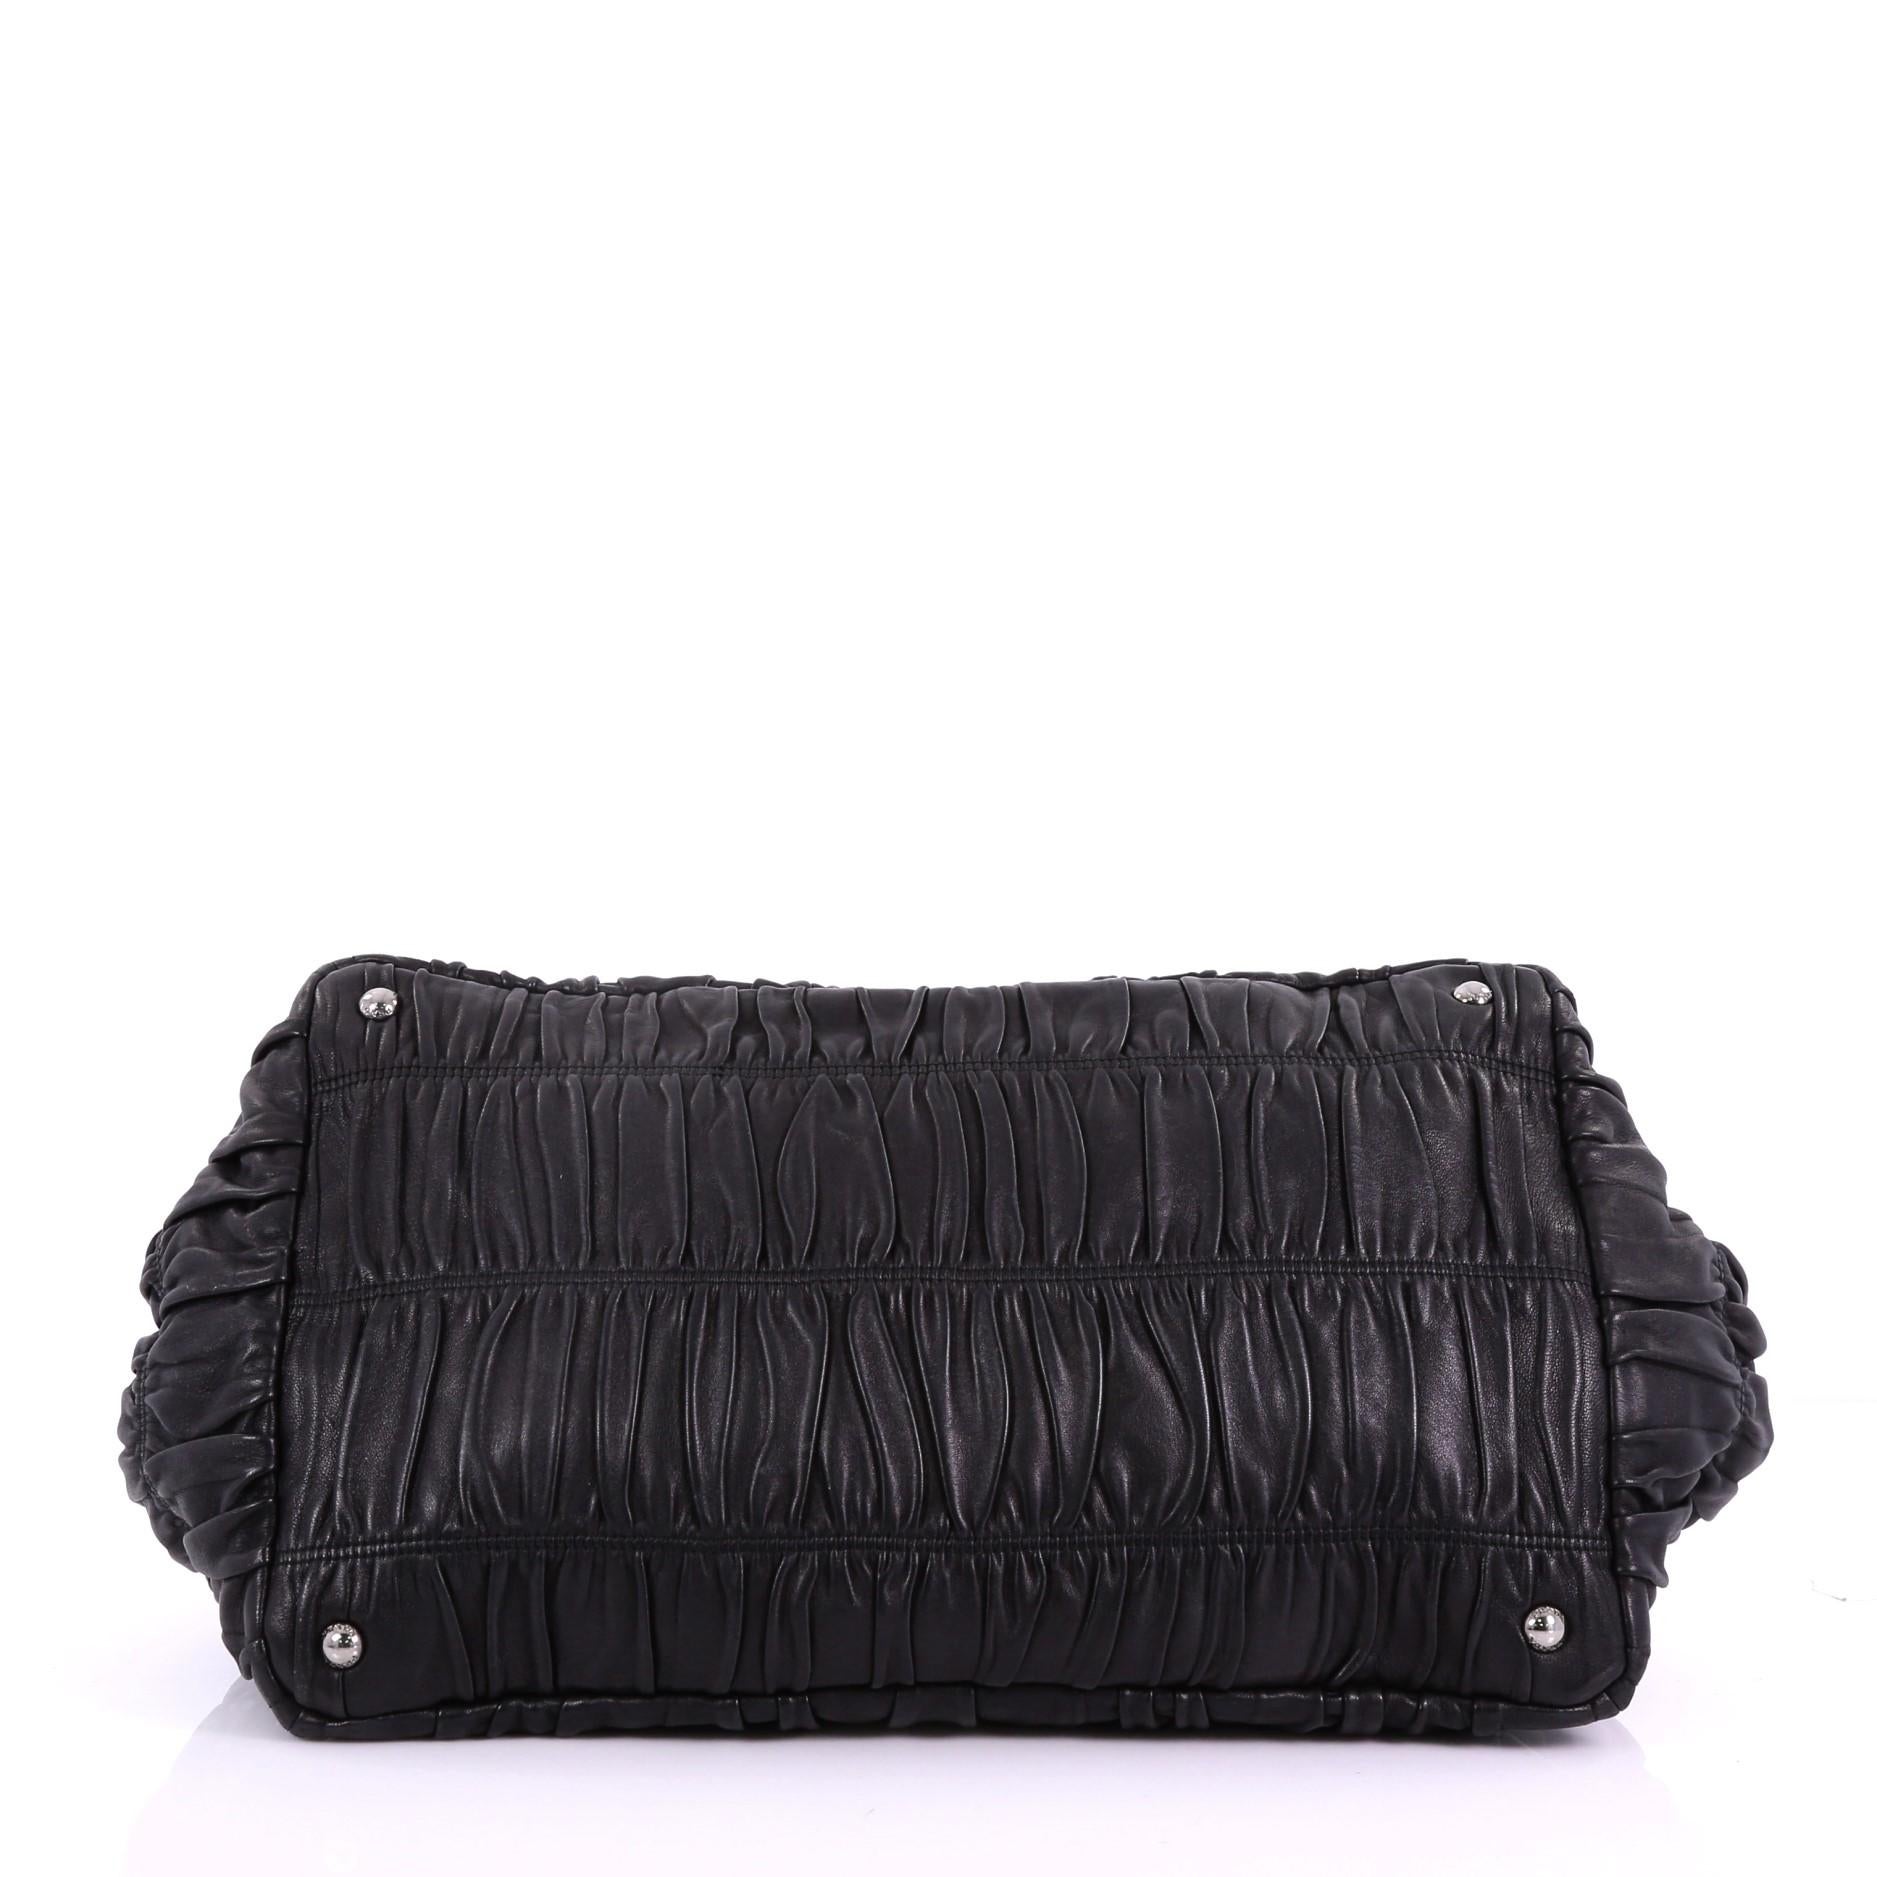 Prada Gaufre Shopping Tote Nappa Leather Large für Damen oder Herren